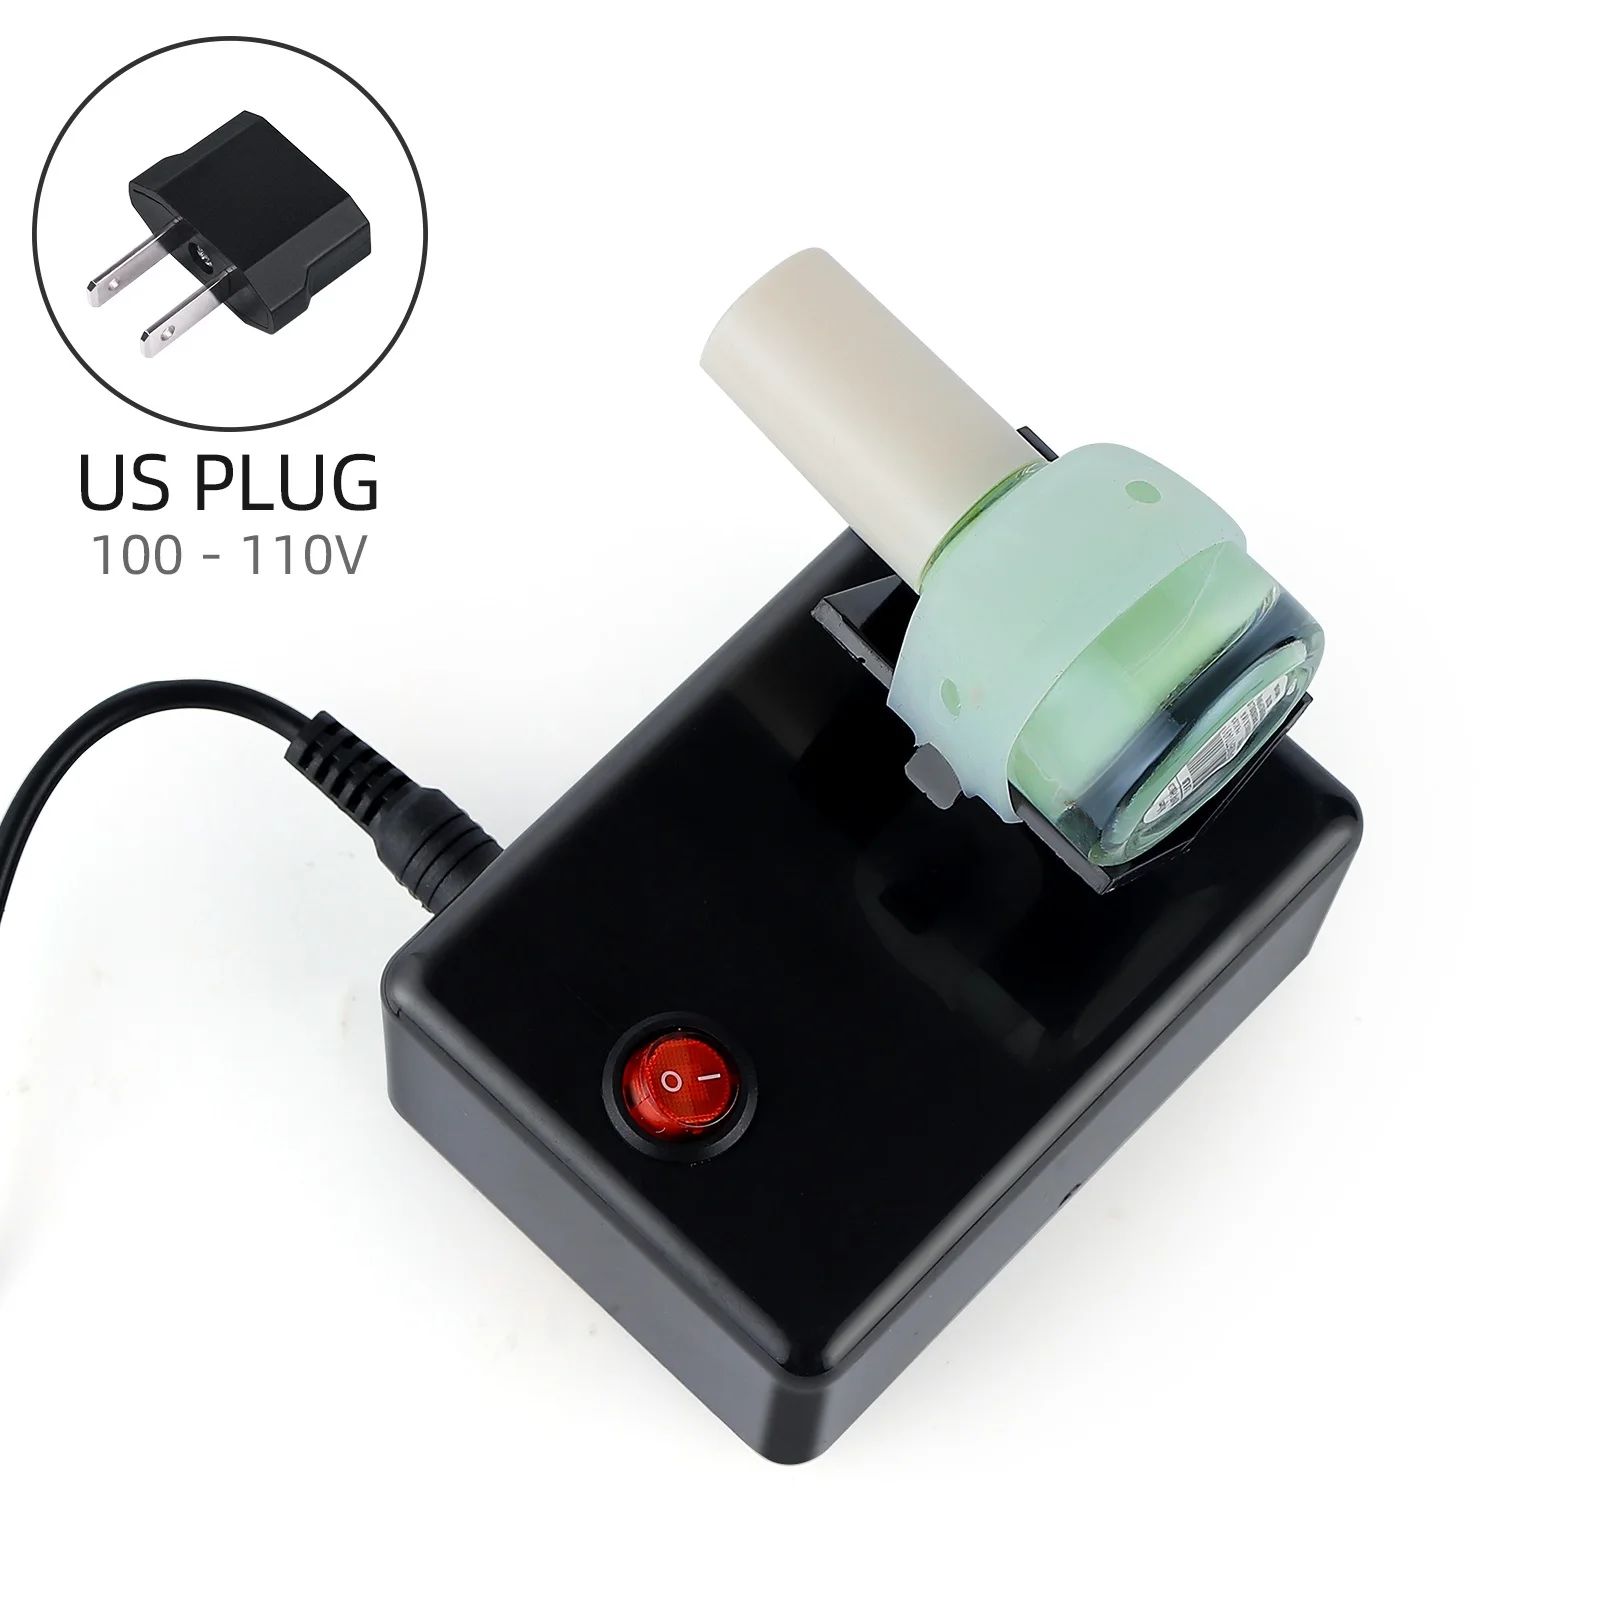 US plug(3200rpm)